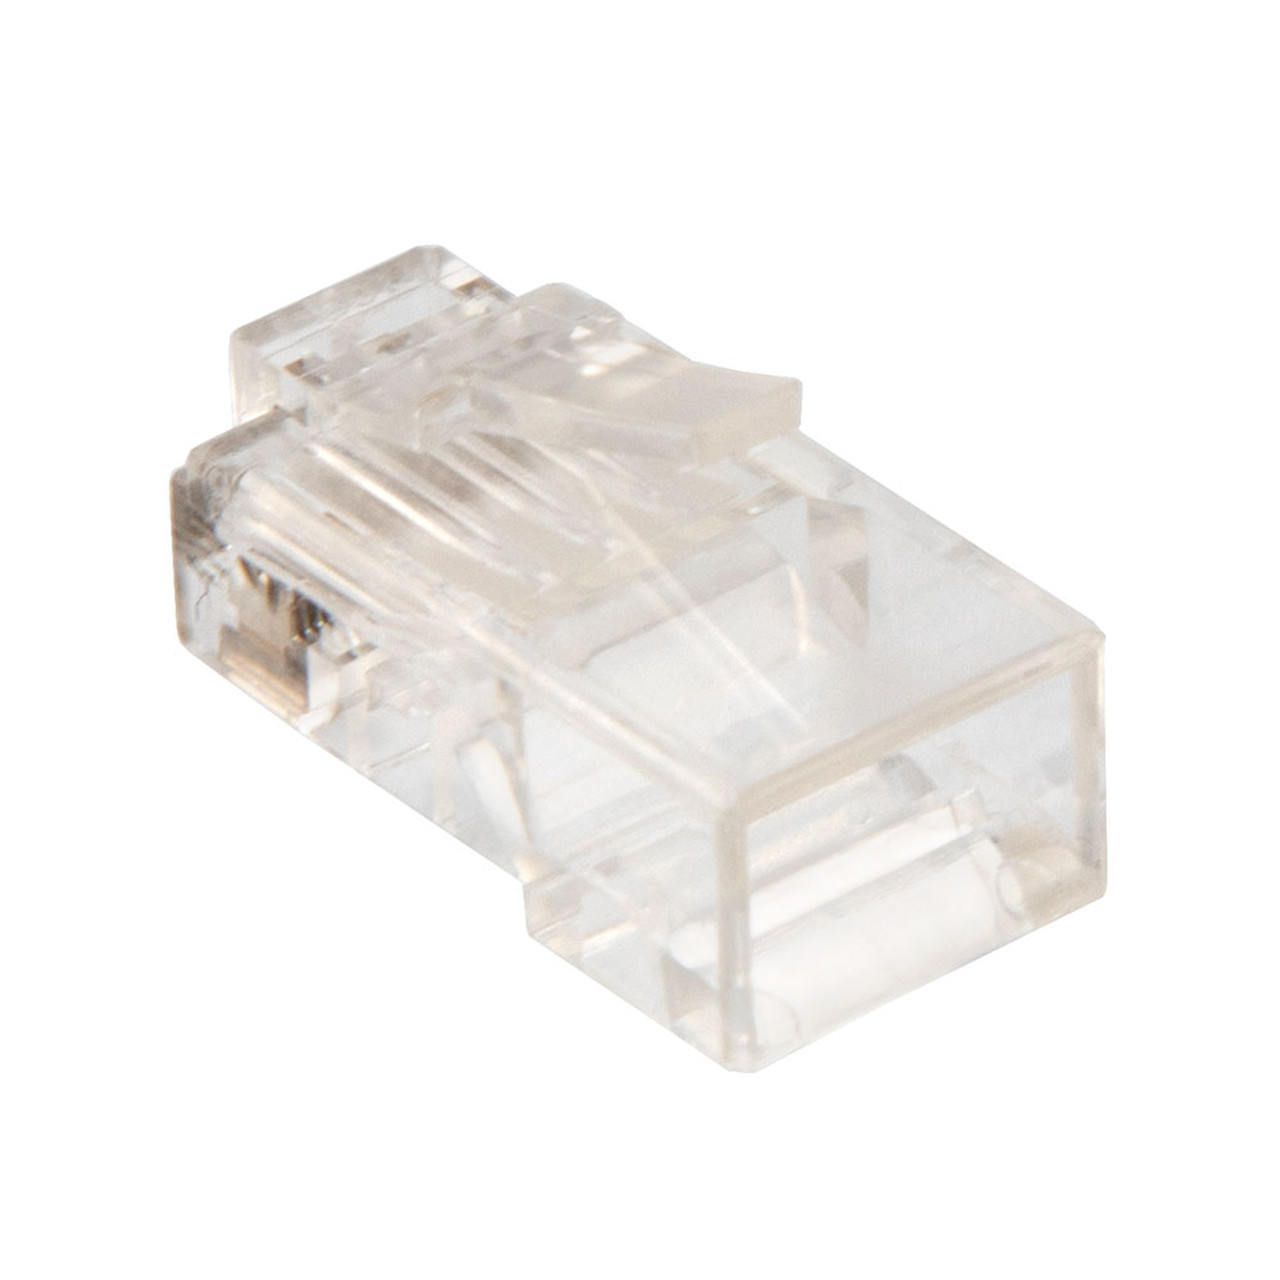 CAT6 UTP Ethernet RJ45 Plug, 25 pack, C6-8P8C, CE Compliance